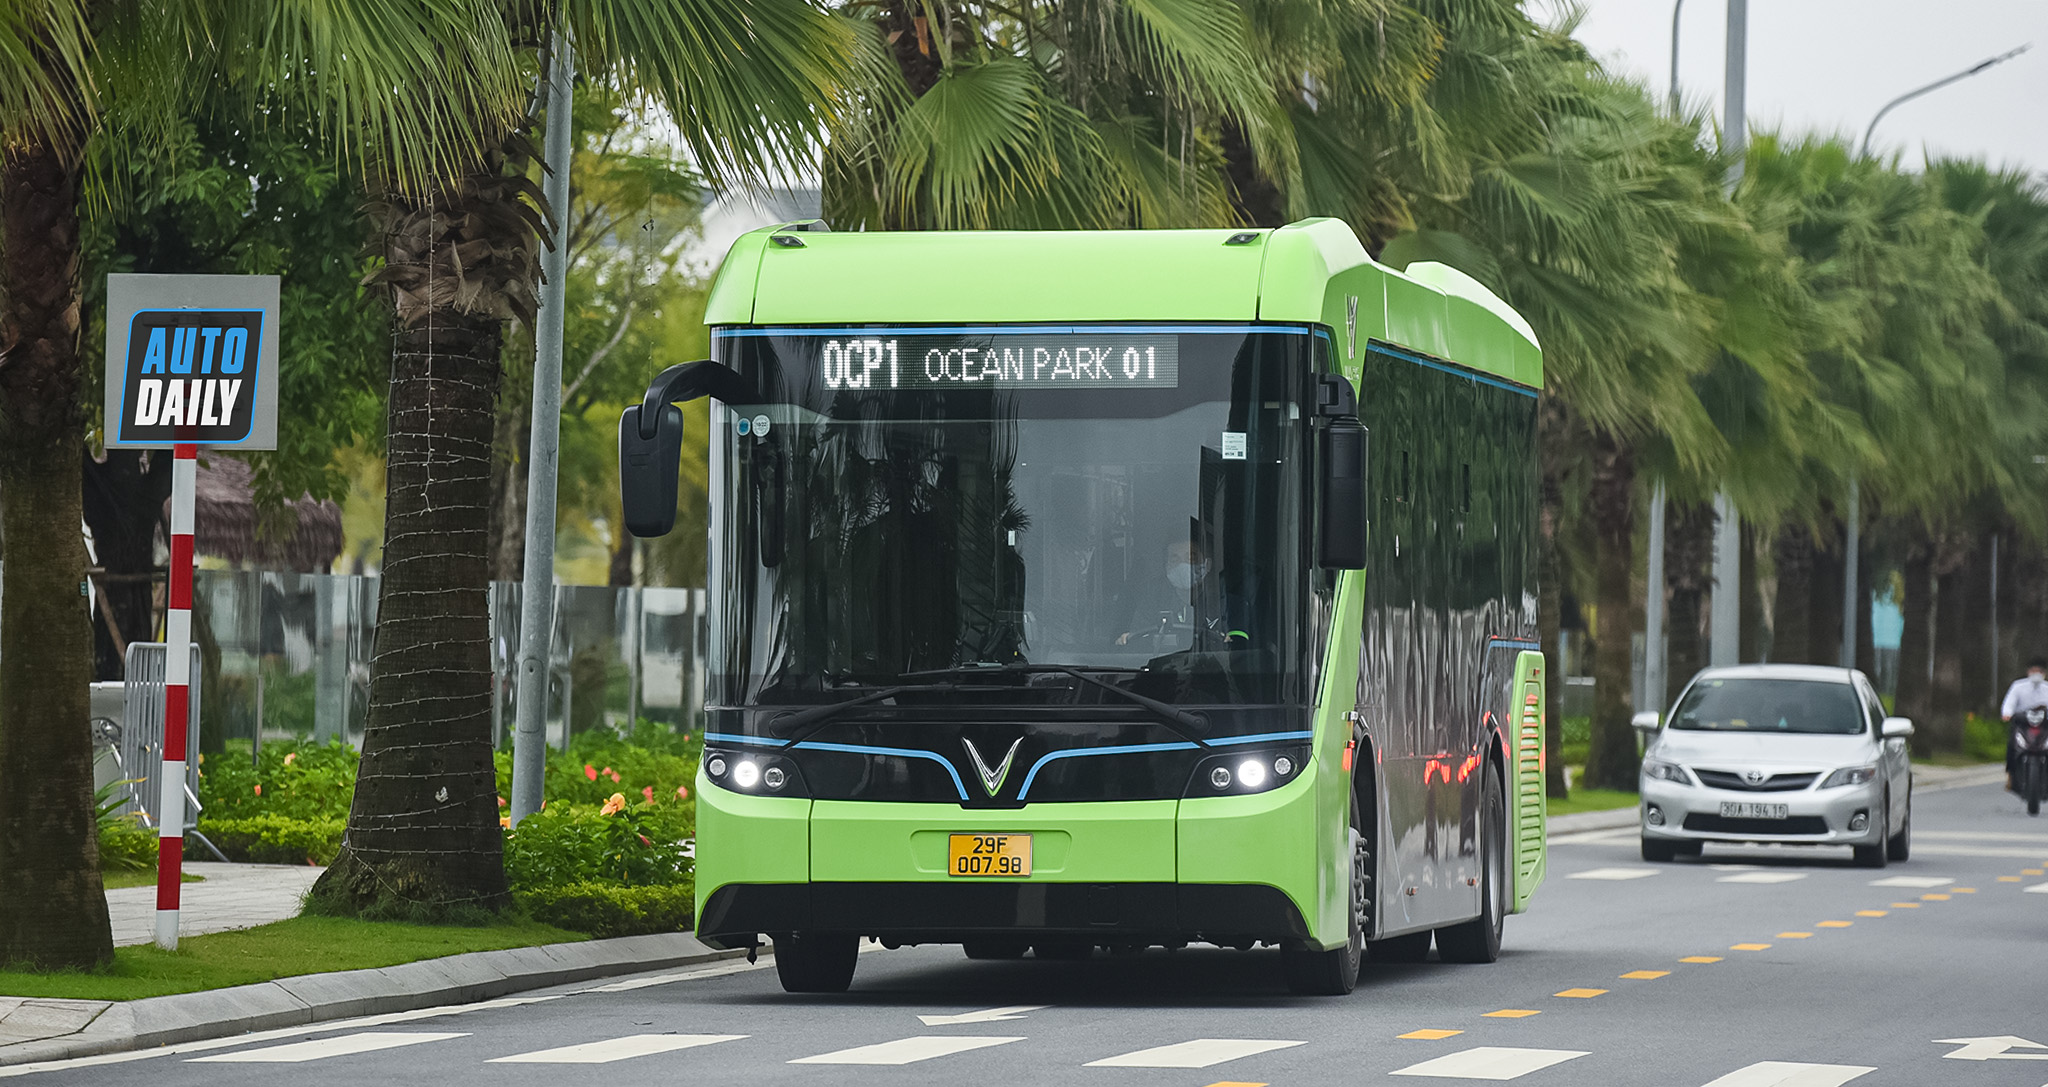 3 tuyến xe bus điện đầu tiên bắt đầu hoạt động tại Hà Nội từ 2/12